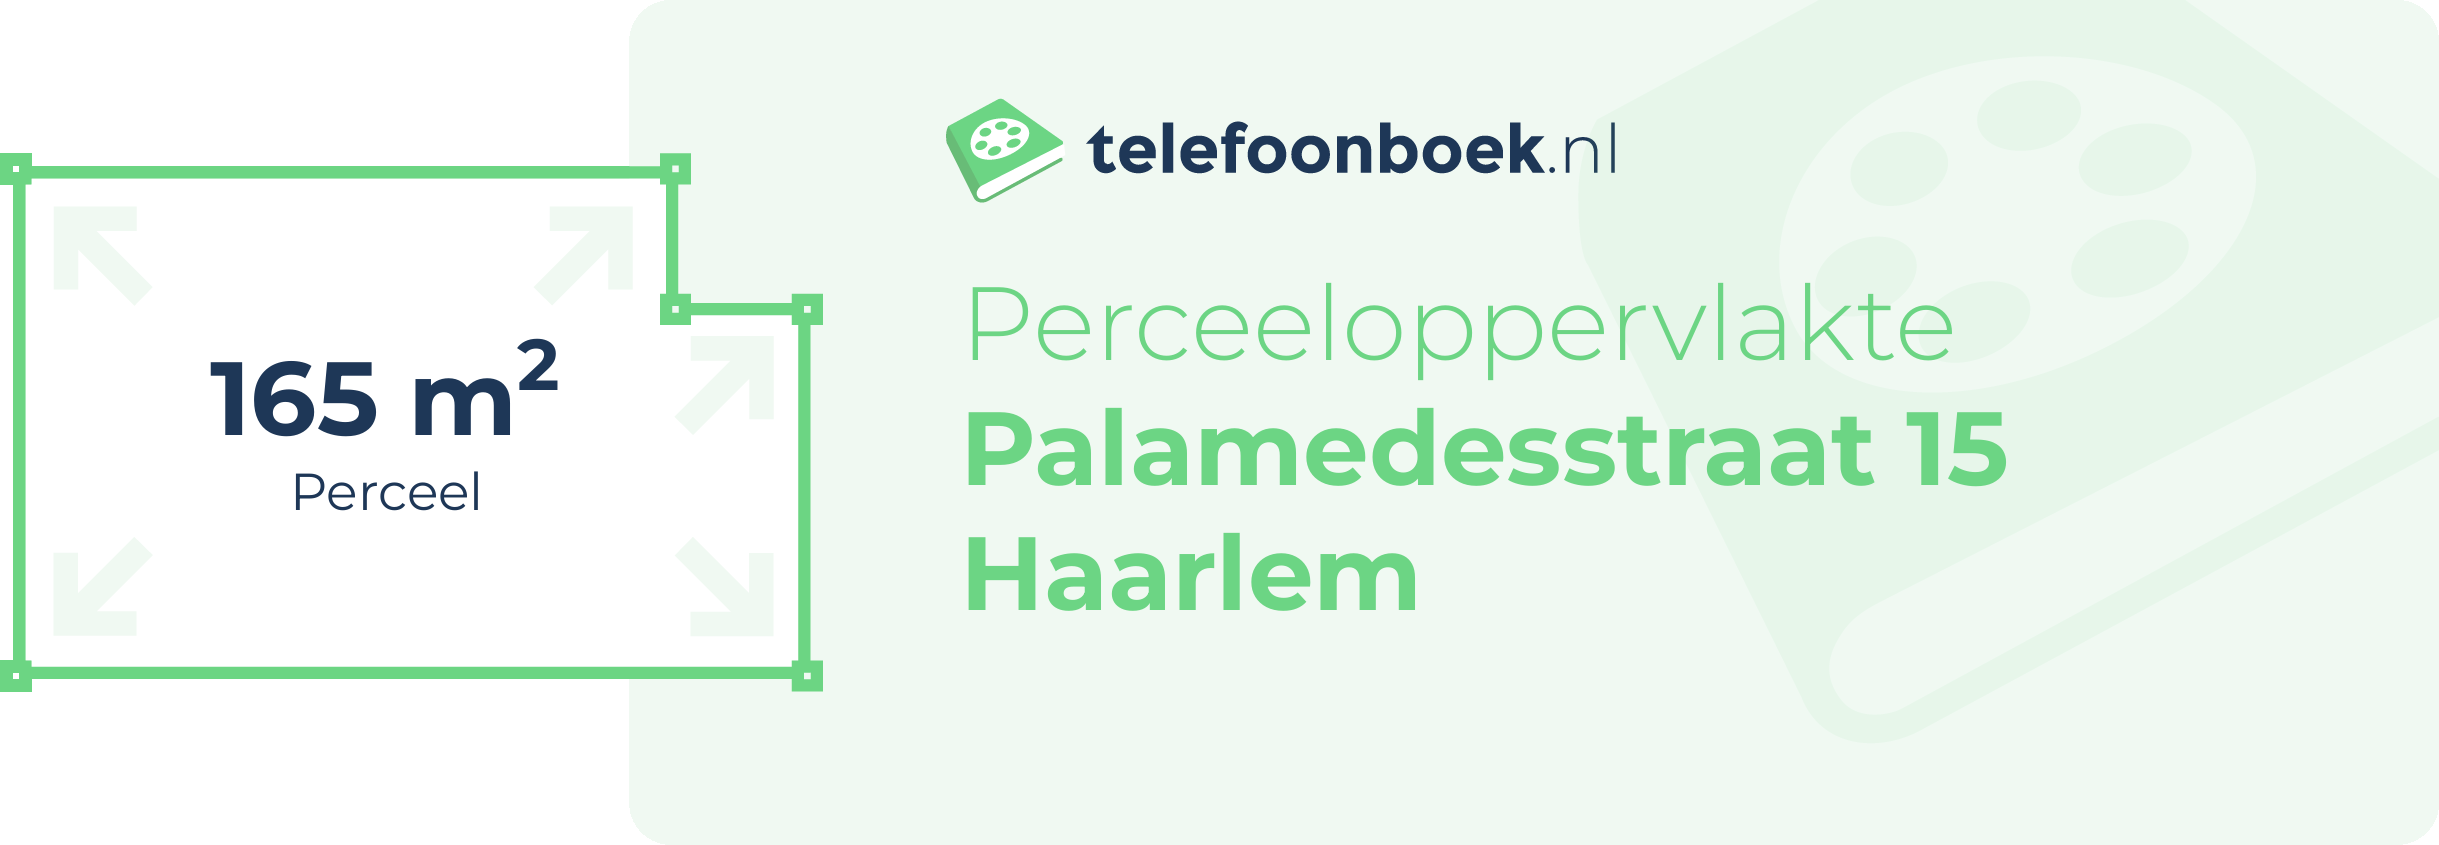 Perceeloppervlakte Palamedesstraat 15 Haarlem